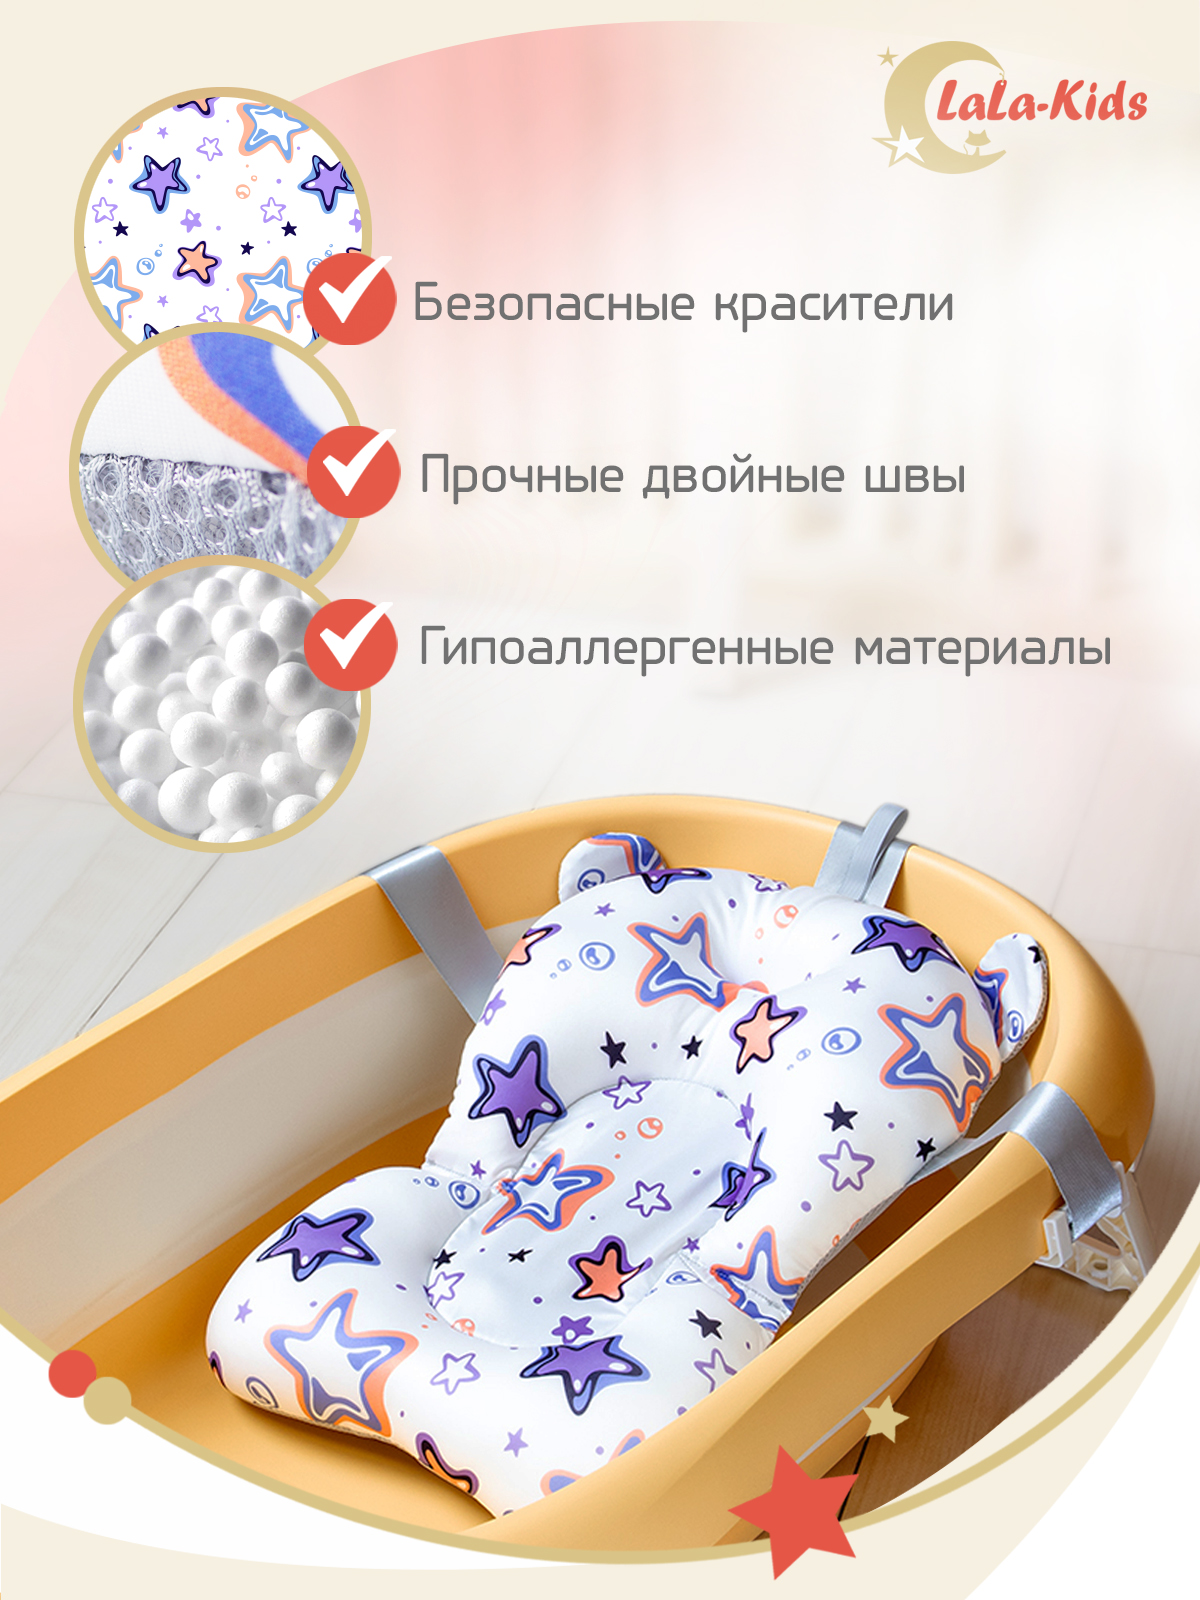 Детская ванночка LaLa-Kids складная с матрасиком для купания новорожденных - фото 15